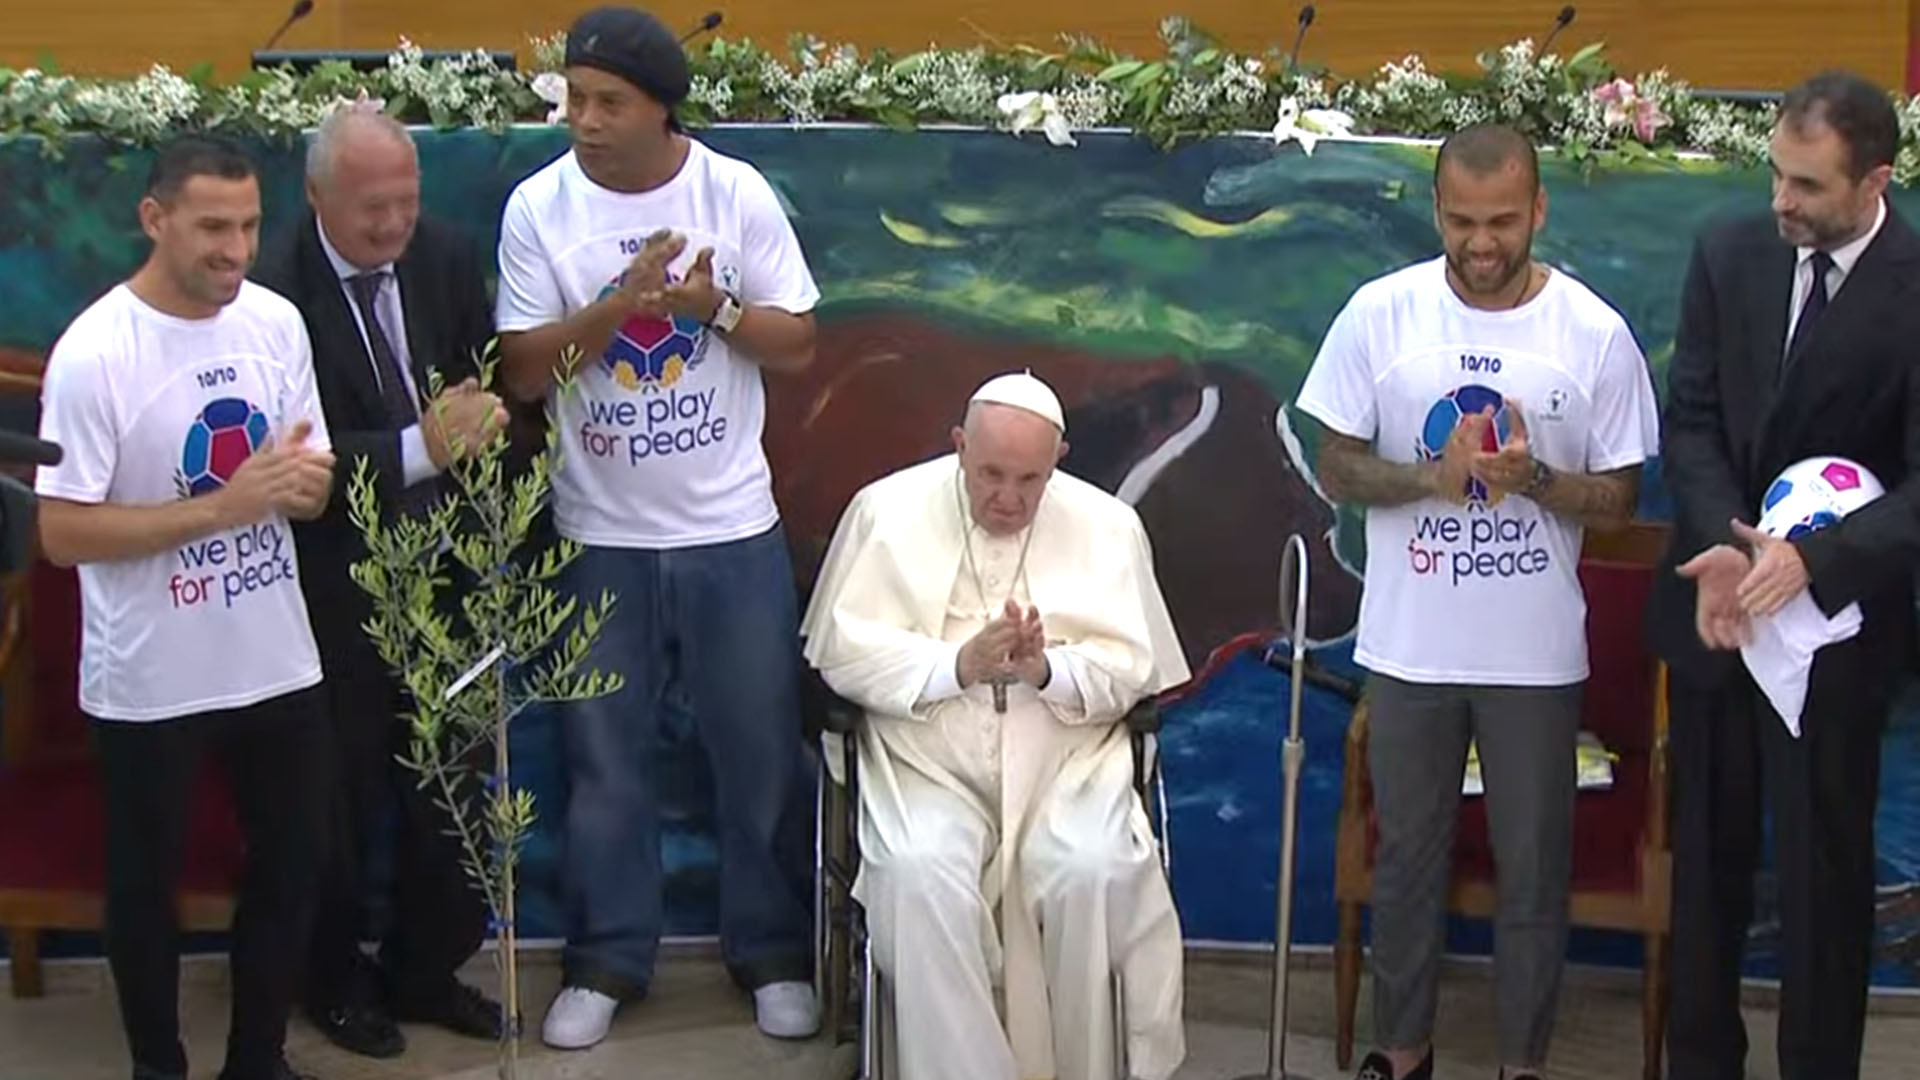 El papa Francisco junto a Ronaldinho, Maxi Rodríguez y Dani Alves, durante la presentación del partido en homenaje a Diego Maradona, que realizará Scholas Occurentes el próximo 10 de octubre en el estadio Olímpico de Roma.
